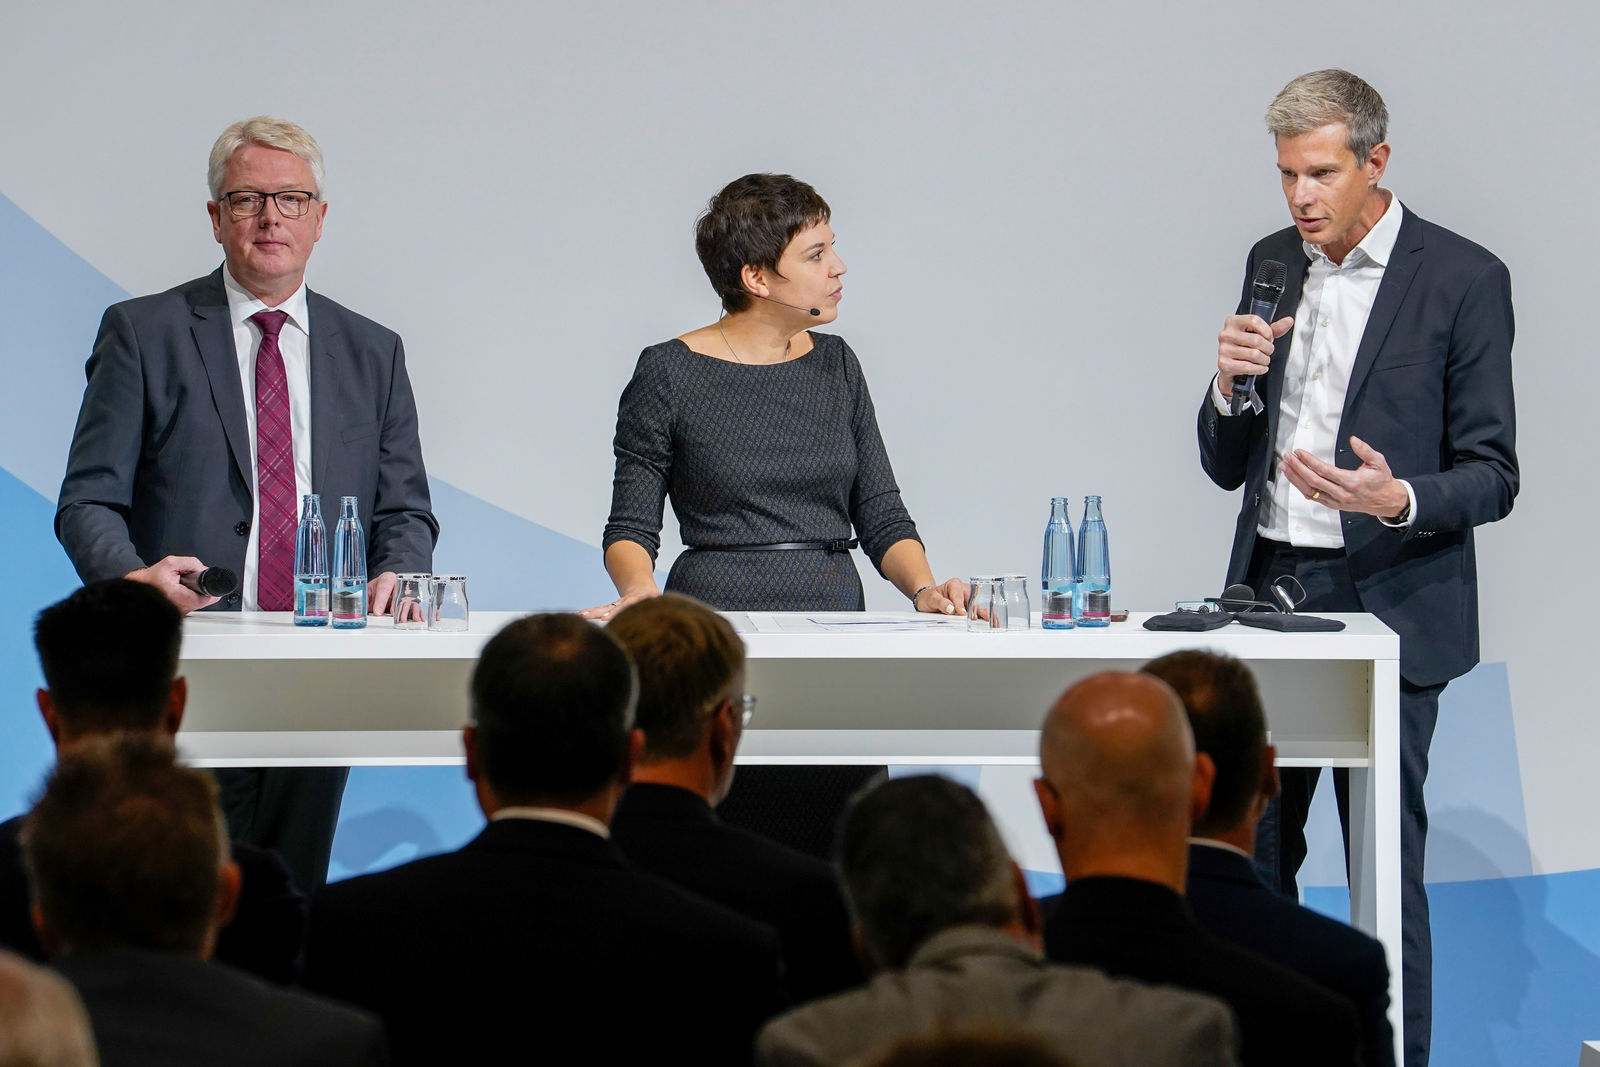 Volkswagen Konzern startet Batteriezellentwicklung und -fertigung in Salzgitter